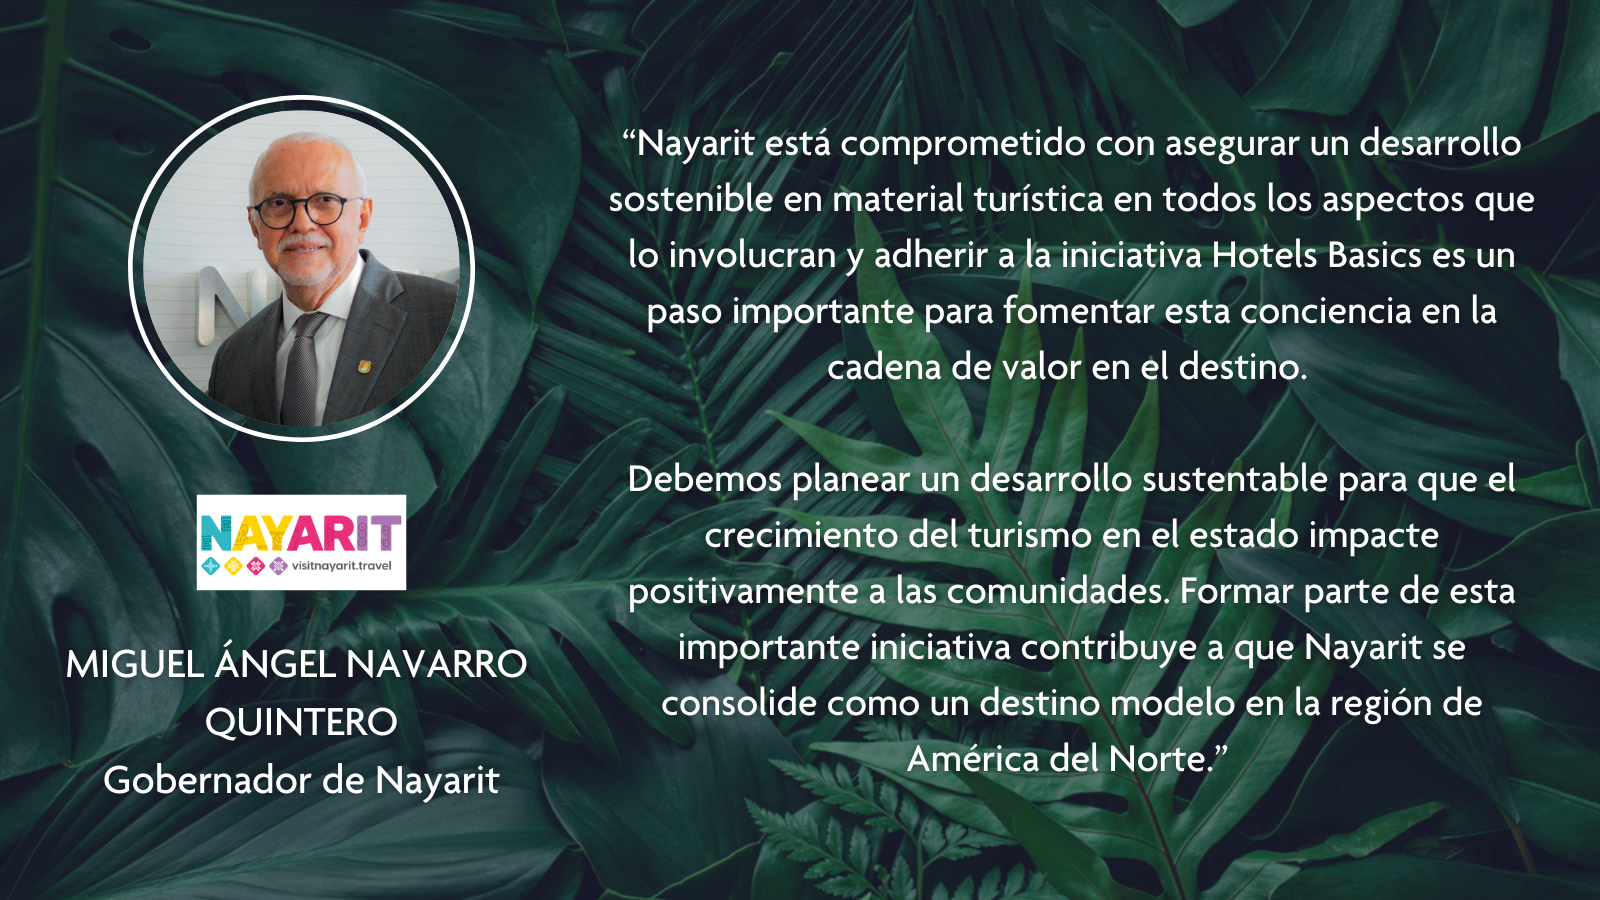 Miguel Angel Navarro Quintero, Nayarit Governor quote